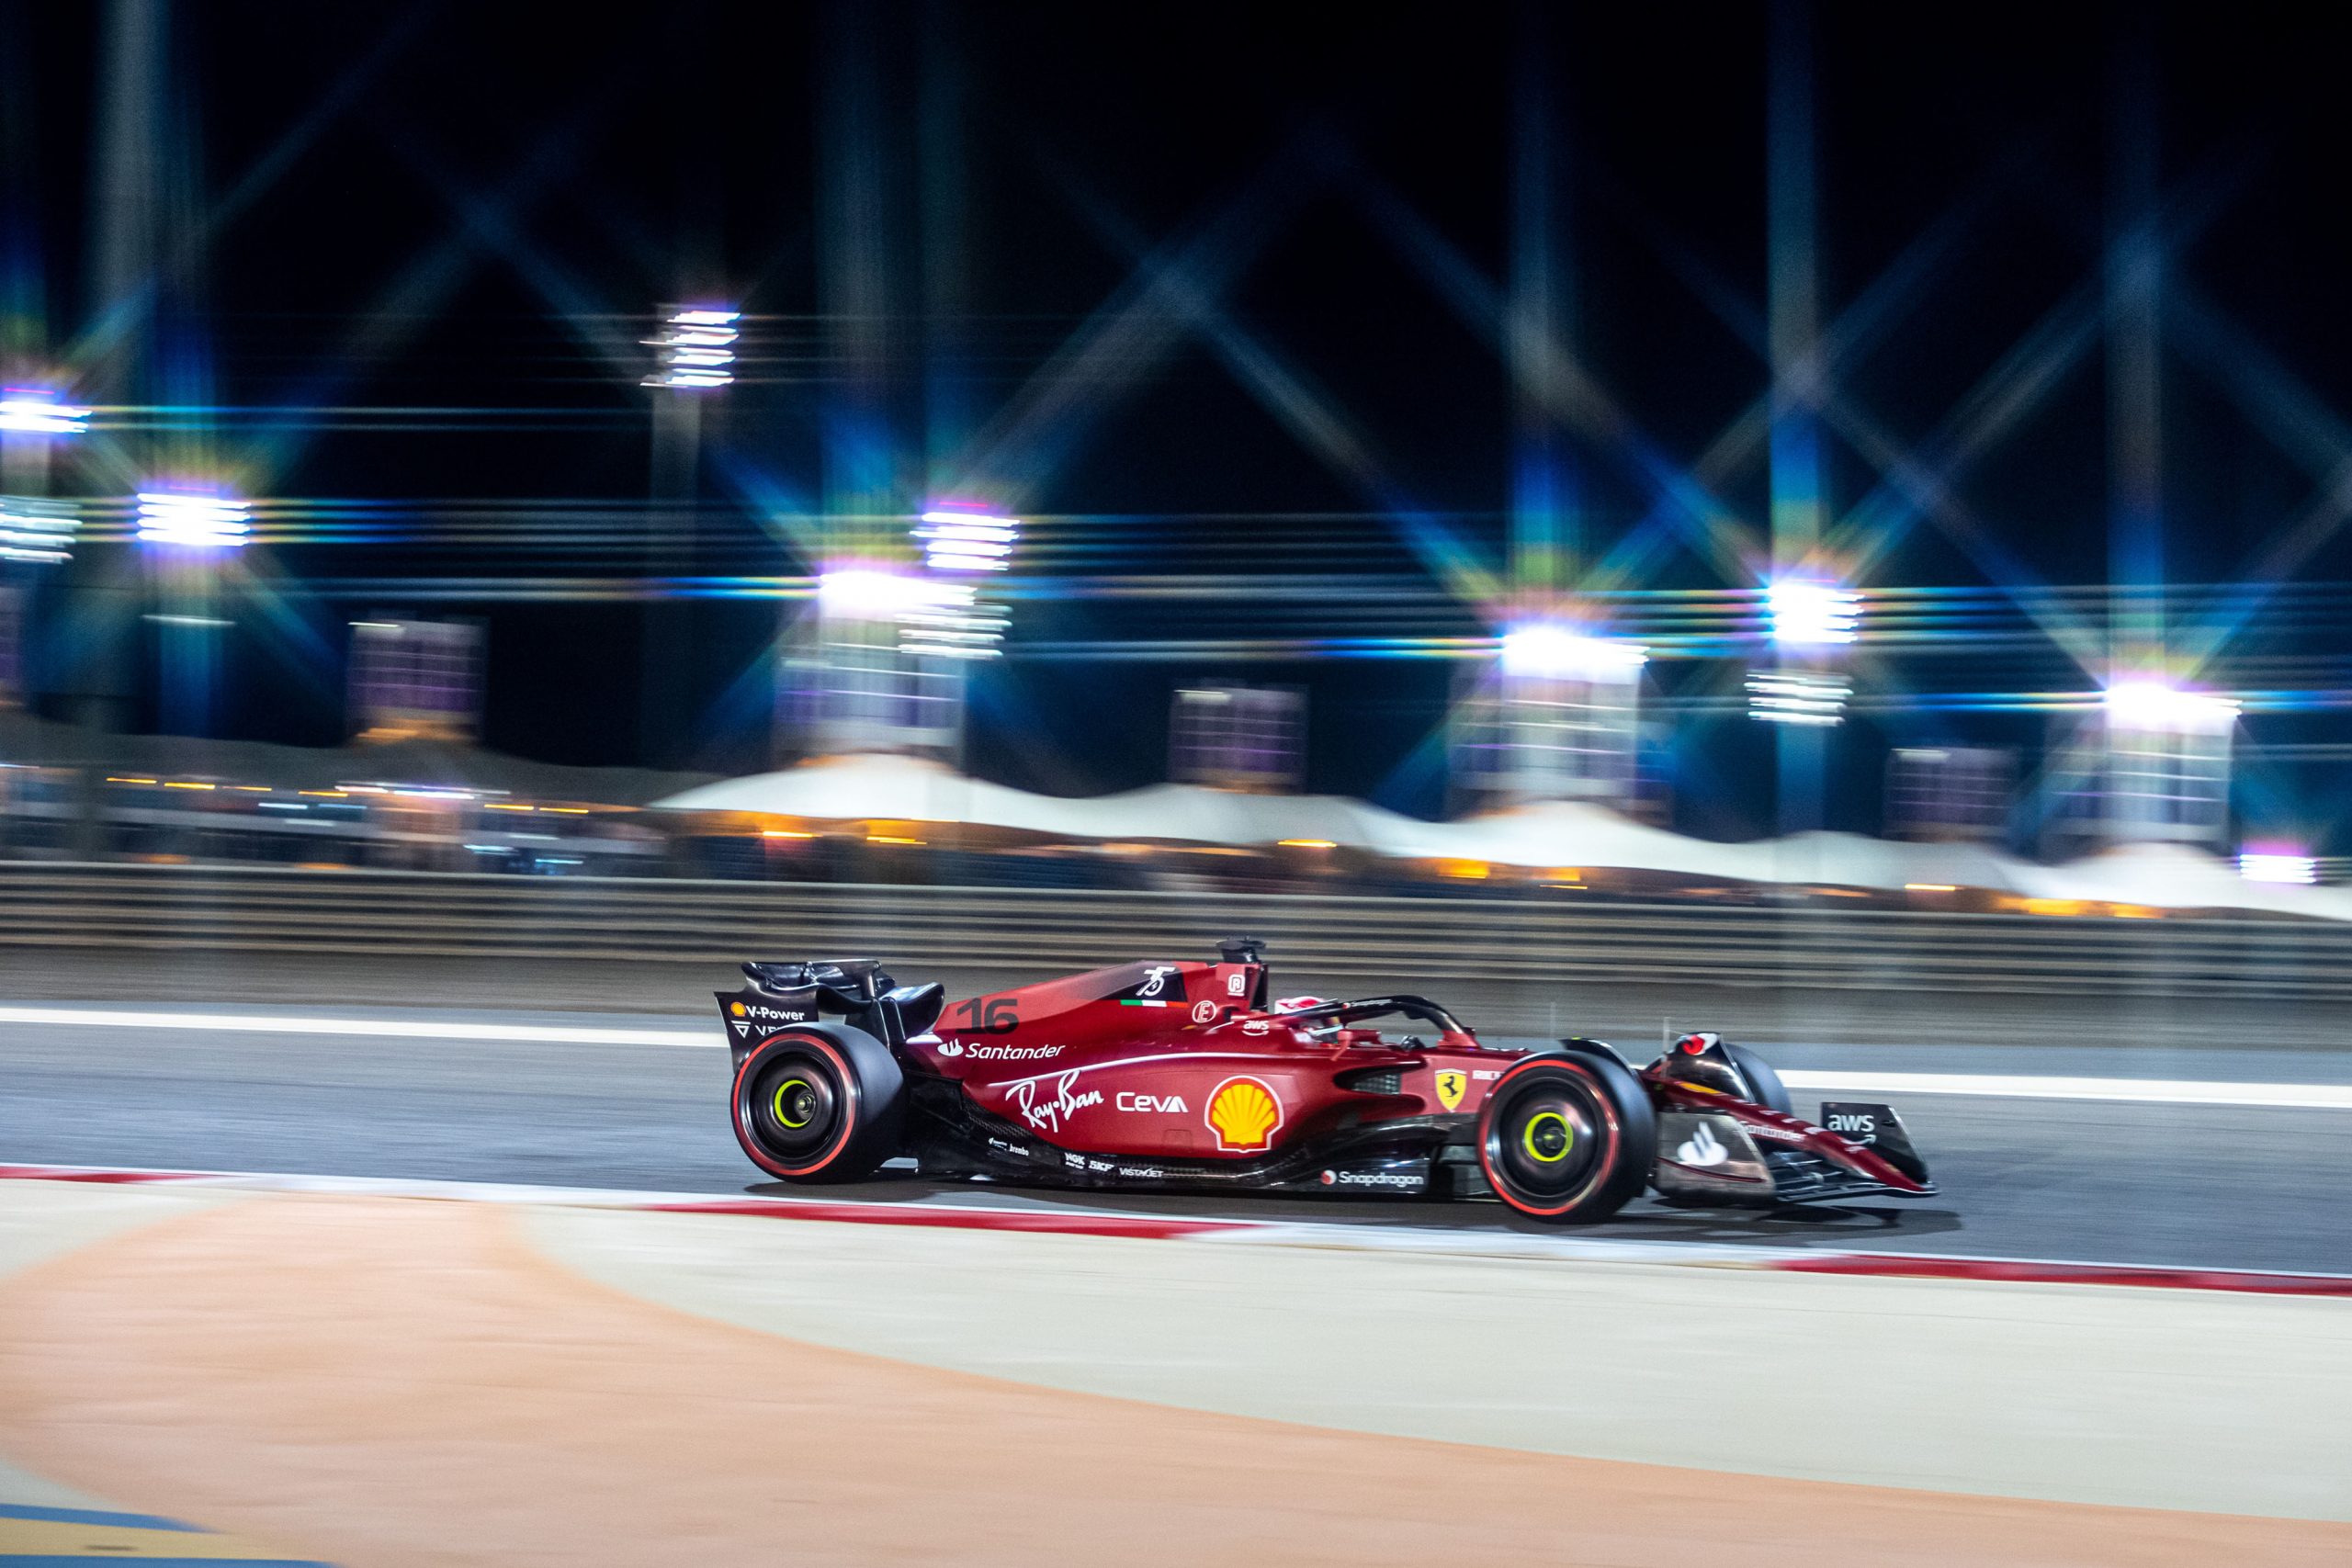 Qualifica, Gp Bahrain 2022: Leclerc in pole position. La Ferrari ritorna!